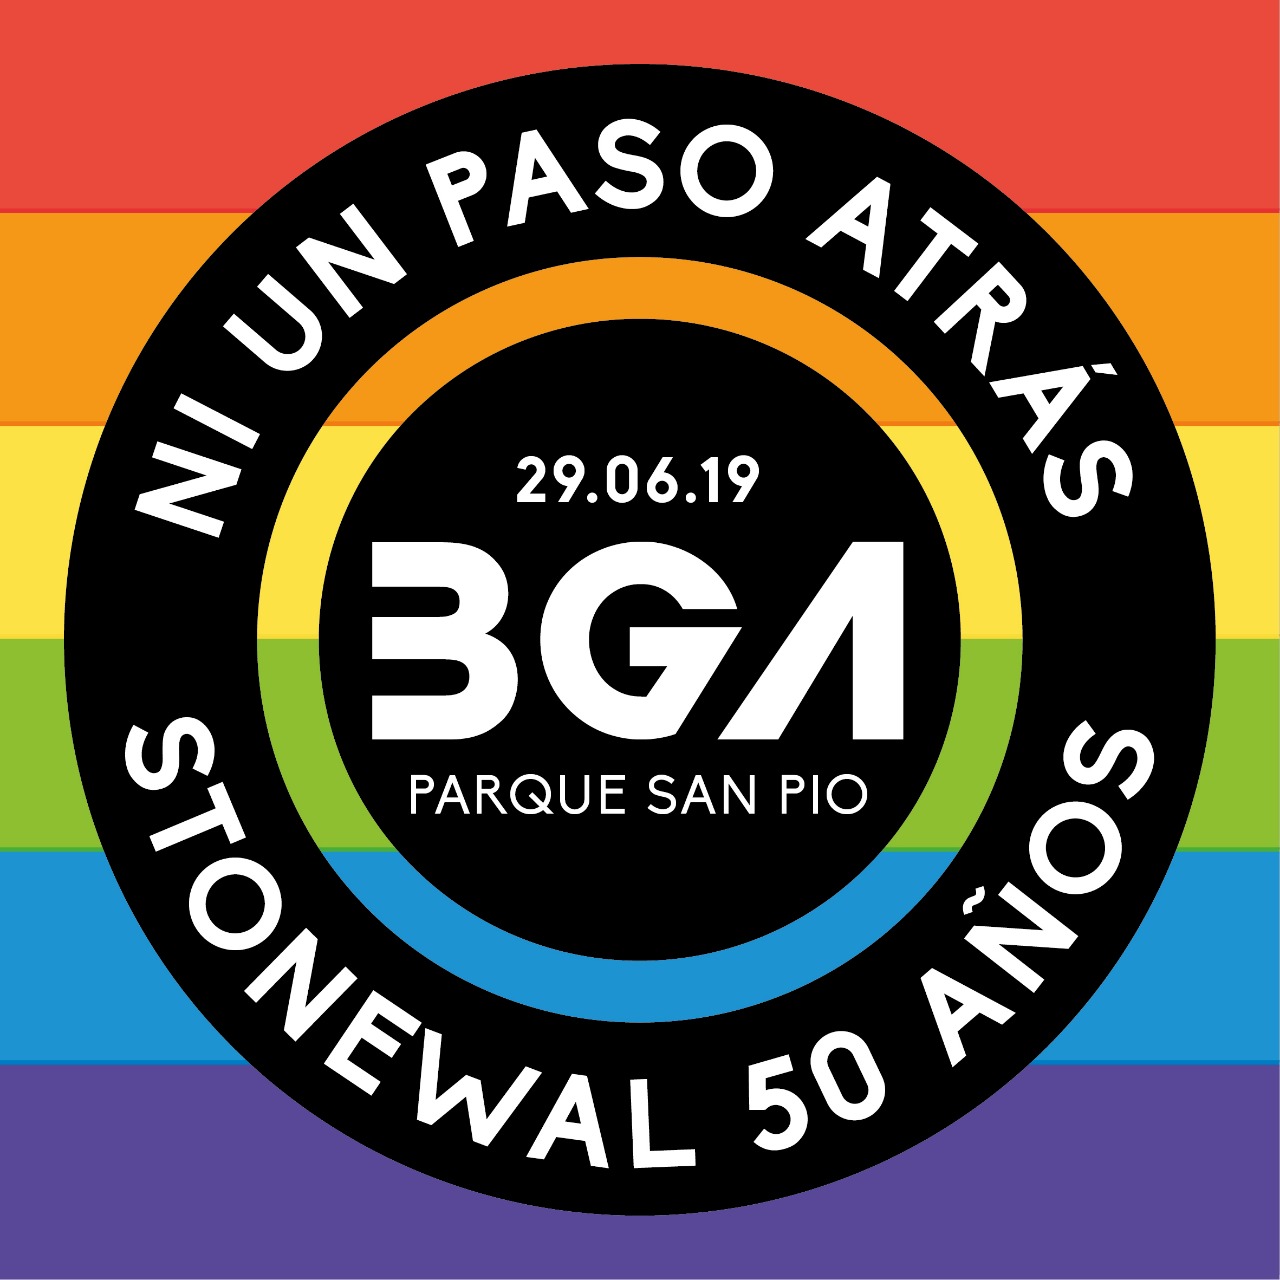  Marcha LGBTI Bucaramanga 2019 [BUCARAMANGA] 